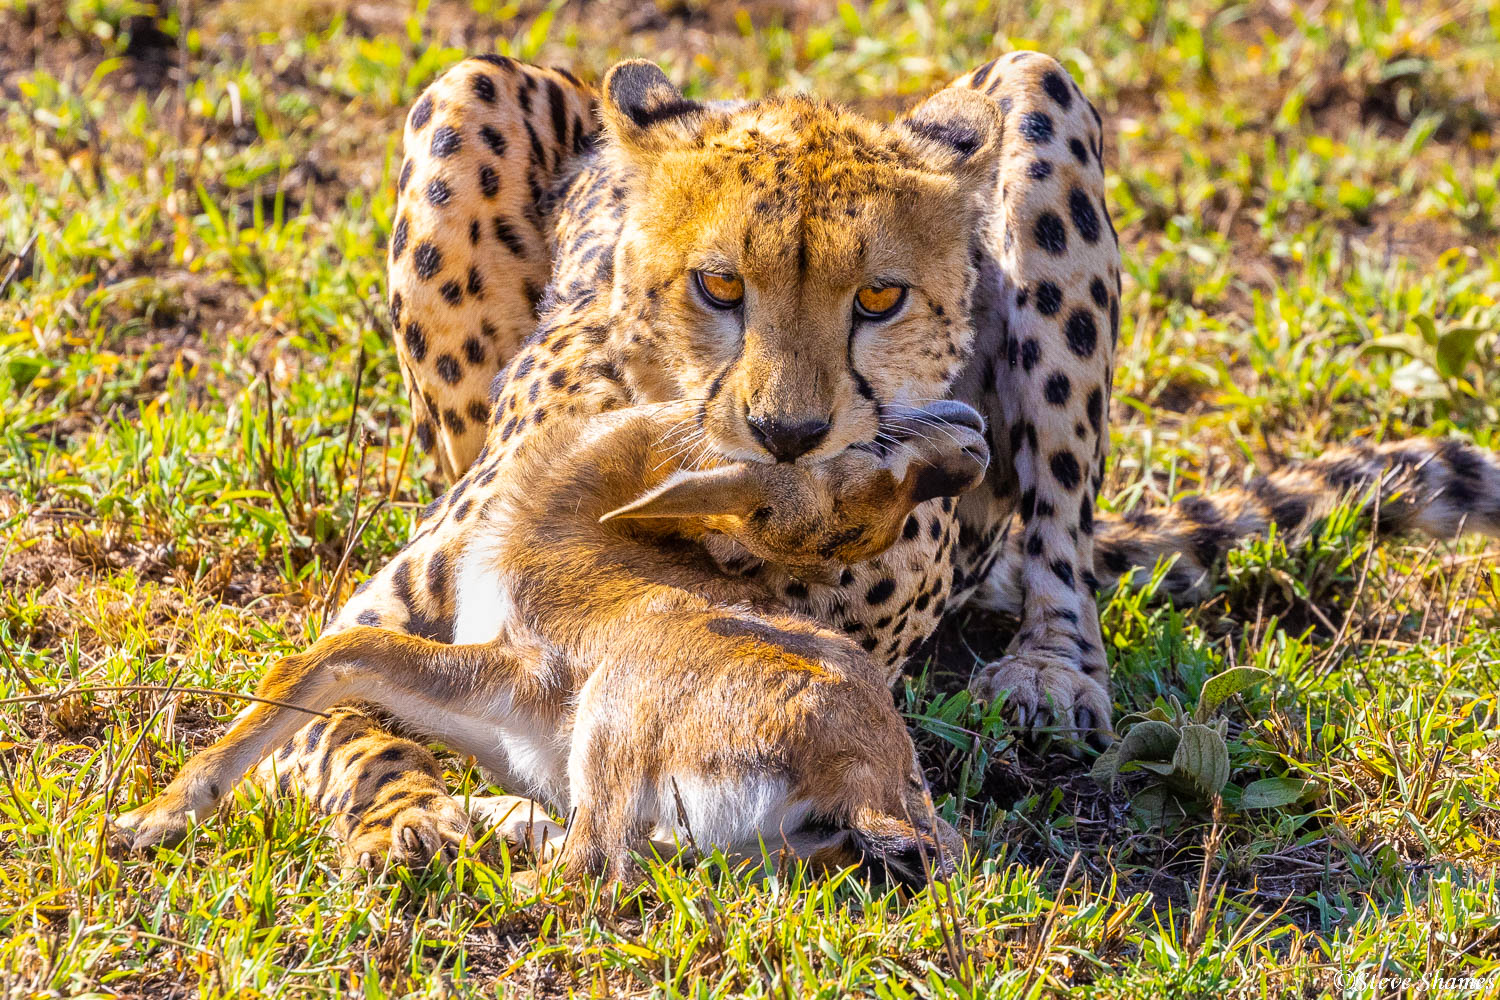 This cheetah scored a Thomson's gazelle kill.